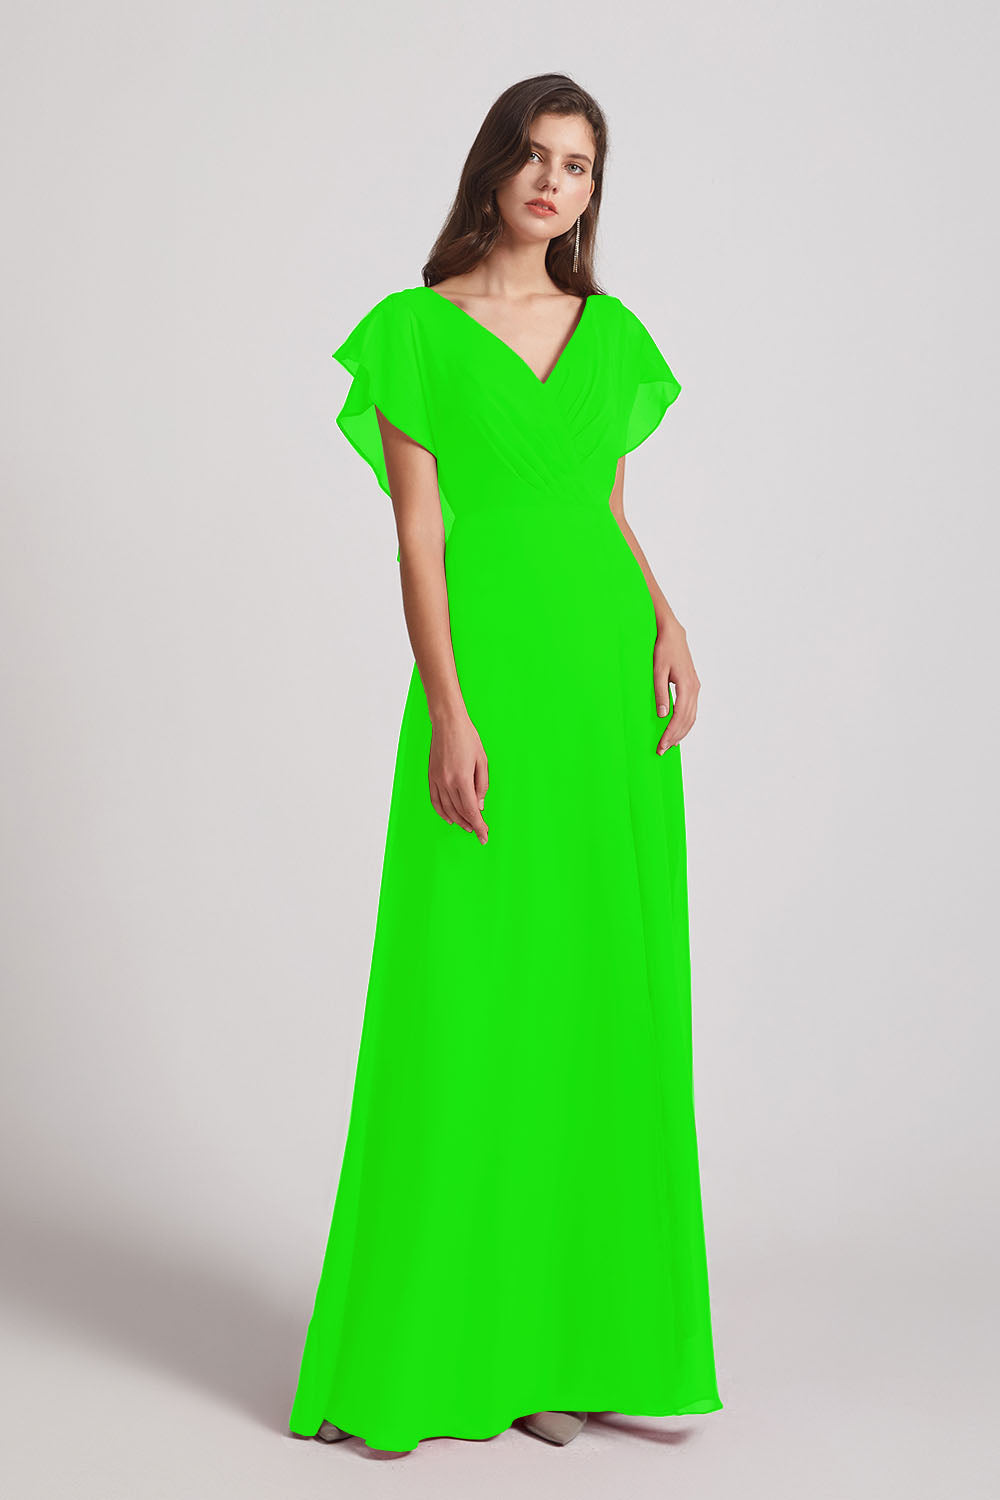 Alfa Bridal Lime Green V-Neck Chiffon Long Backless Bridesmaid Dresses with Side Slit (AF0071)